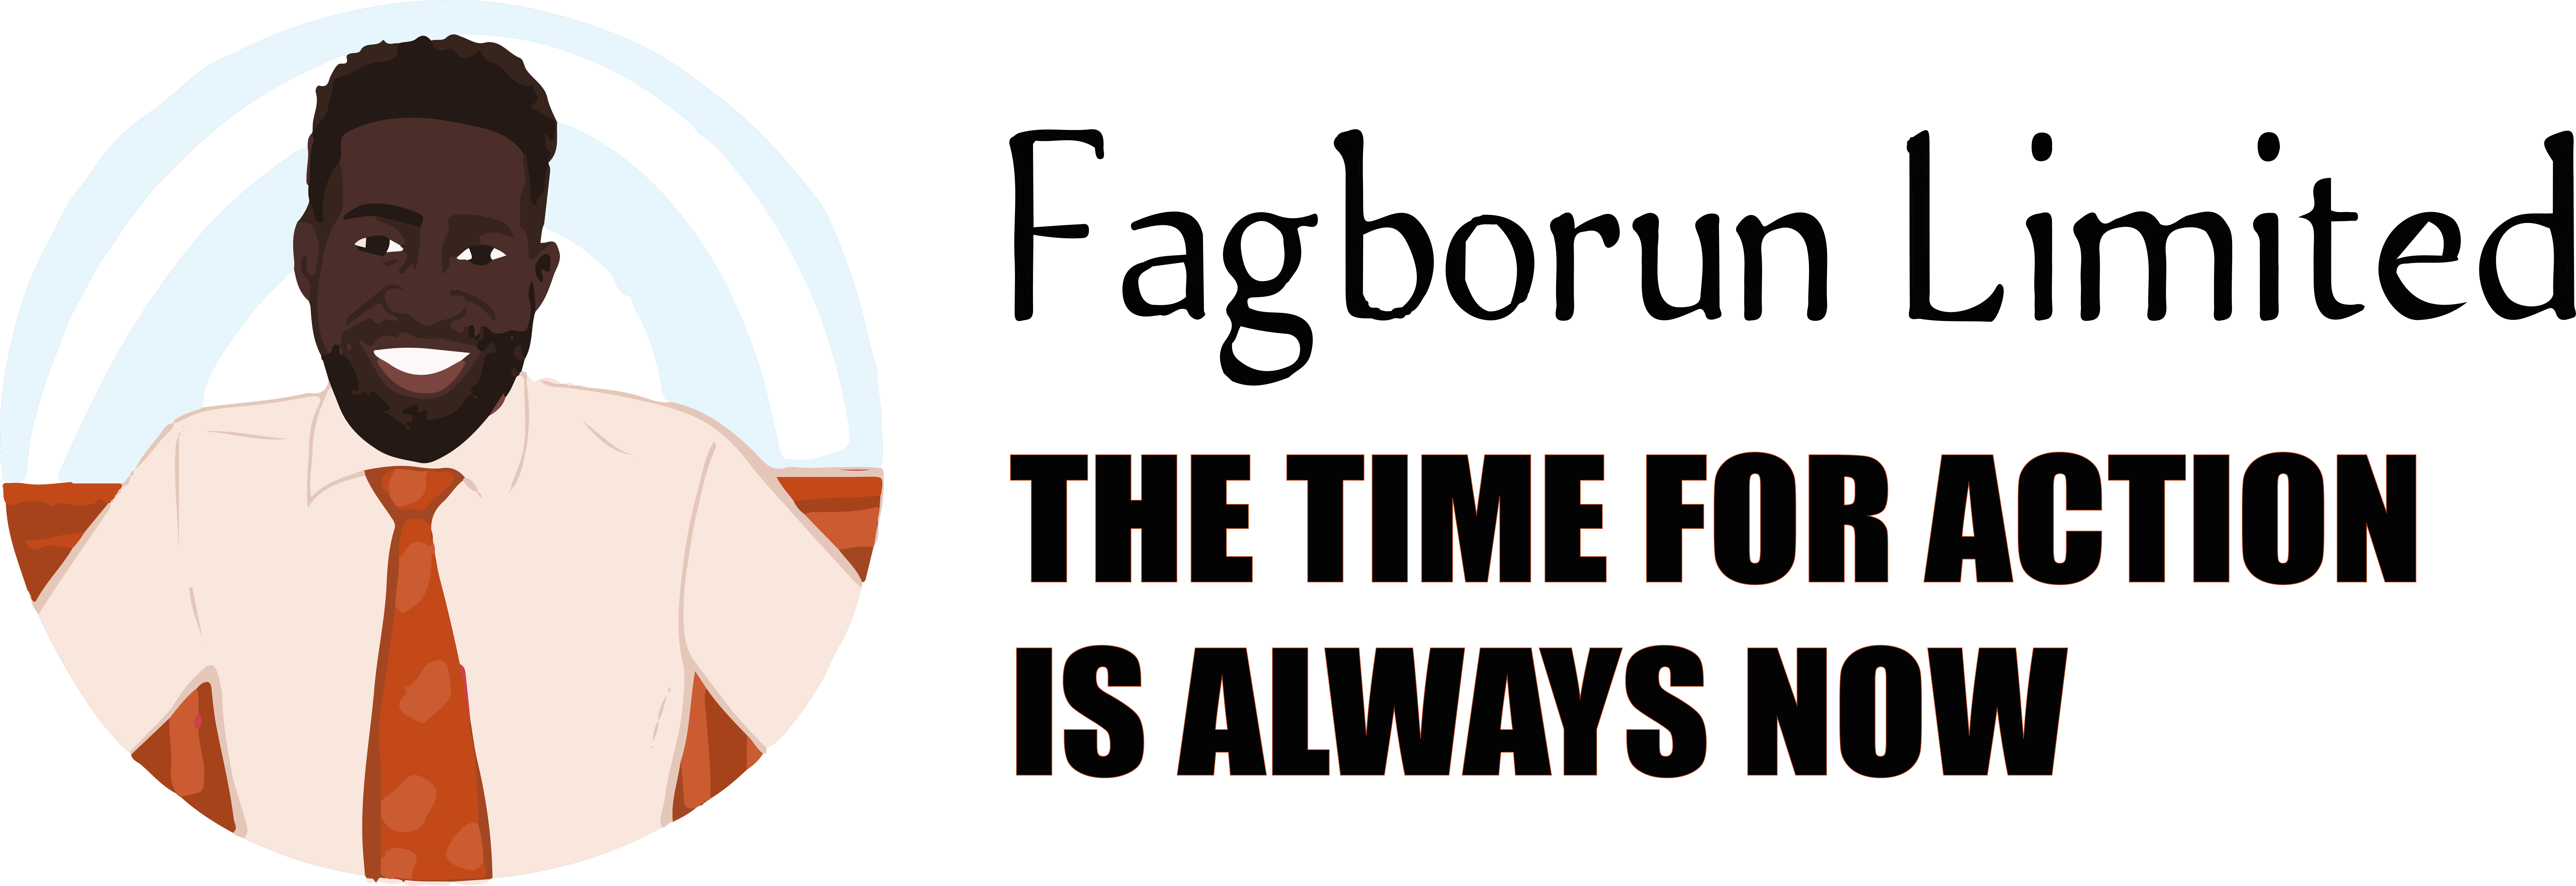 FAGBORUN LTD